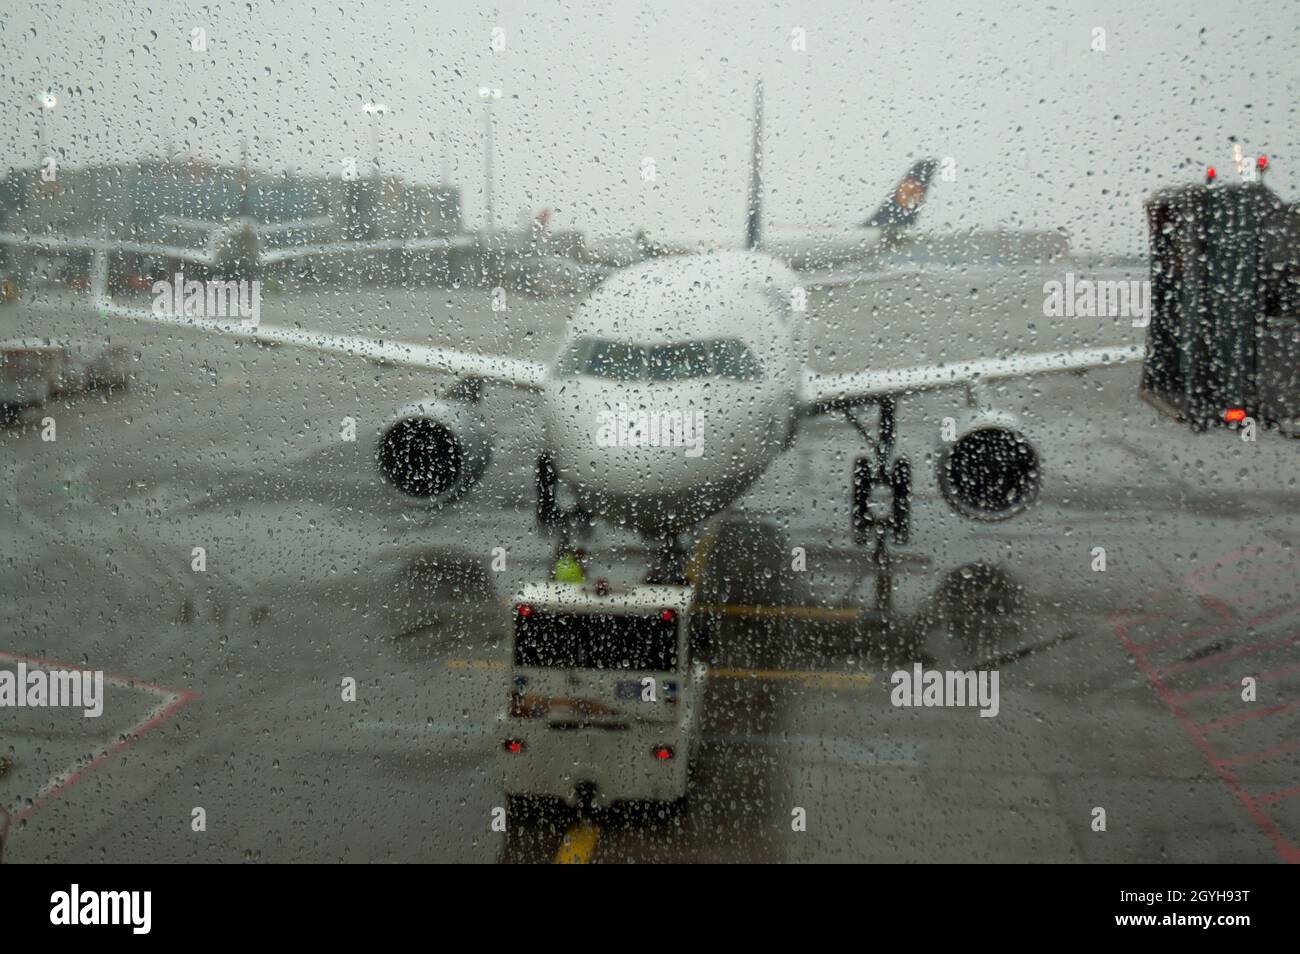 Aeroplano sulla pista visto attraverso la finestra bagnata il giorno piovoso - fuoco sulle gocce dell'acqua sulla finestra Foto Stock